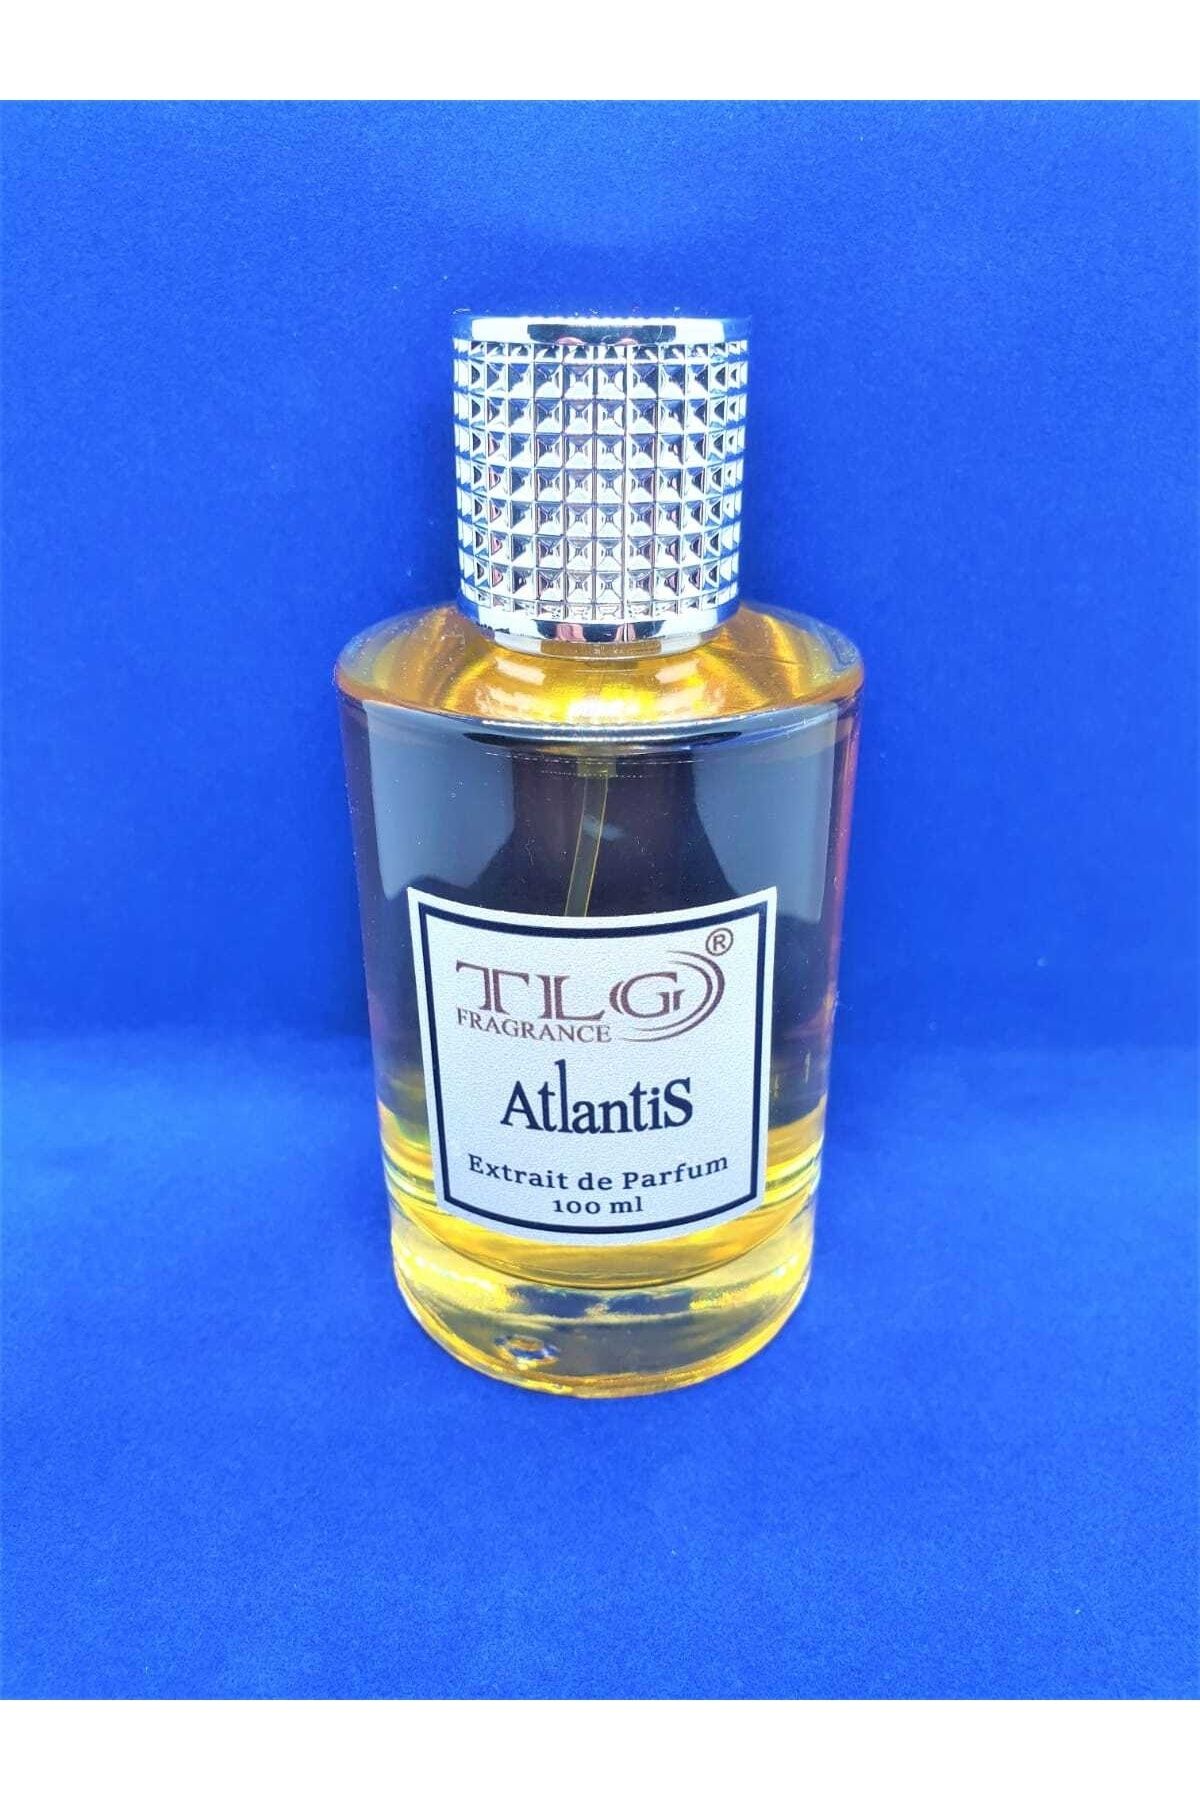 TLG Atlantis Extrait De Parfum, 100 Ml (vkk Infiniti)